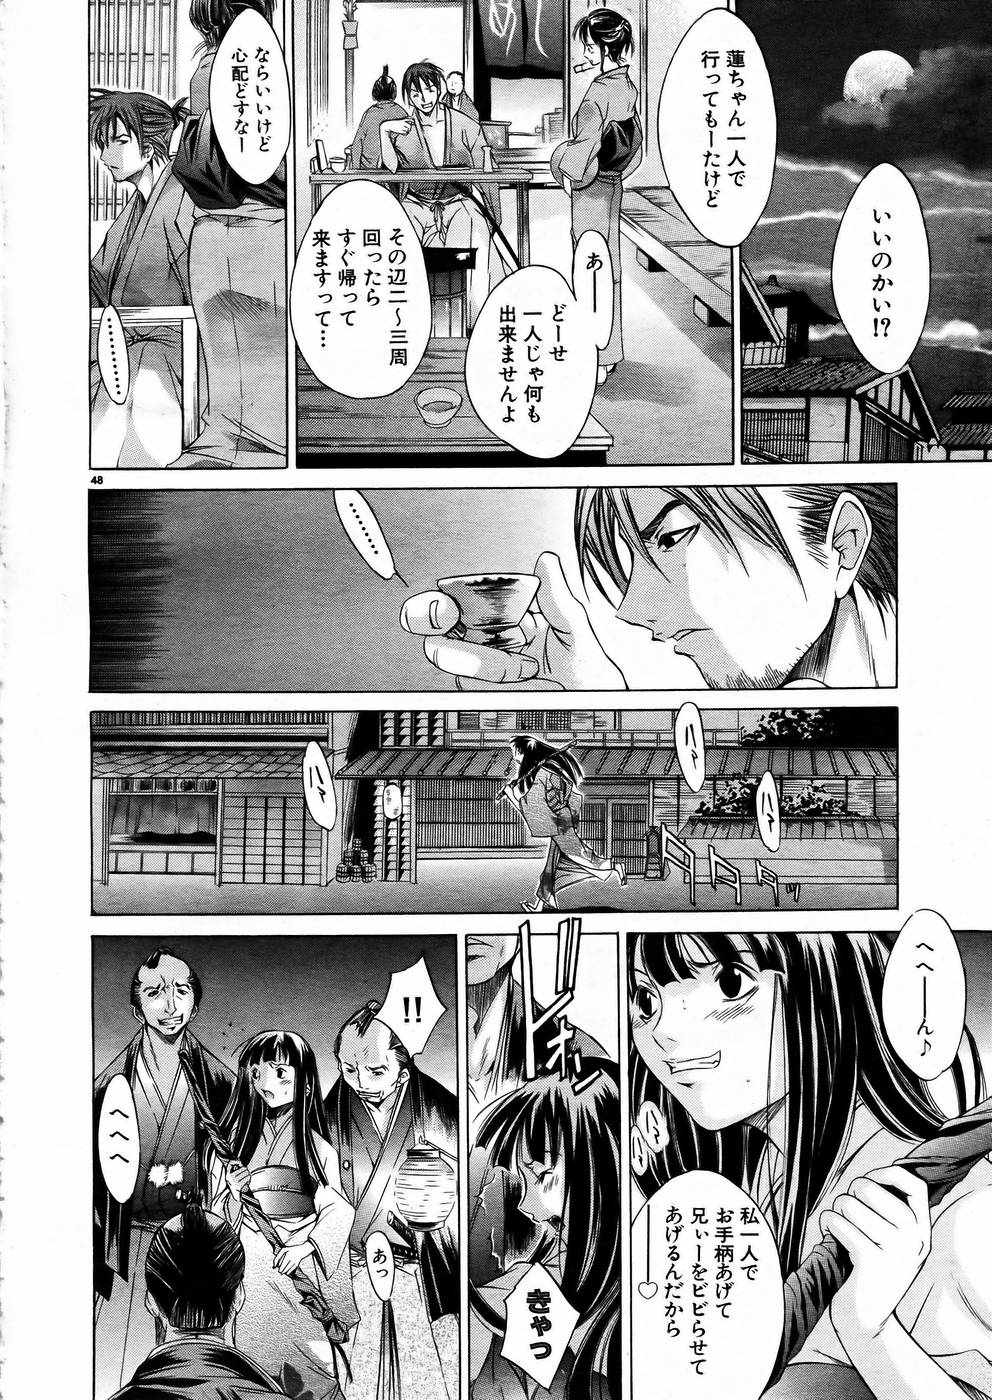 [アンソロジー] 少女剣客凌辱コミック Vol.01 くノ一斬!